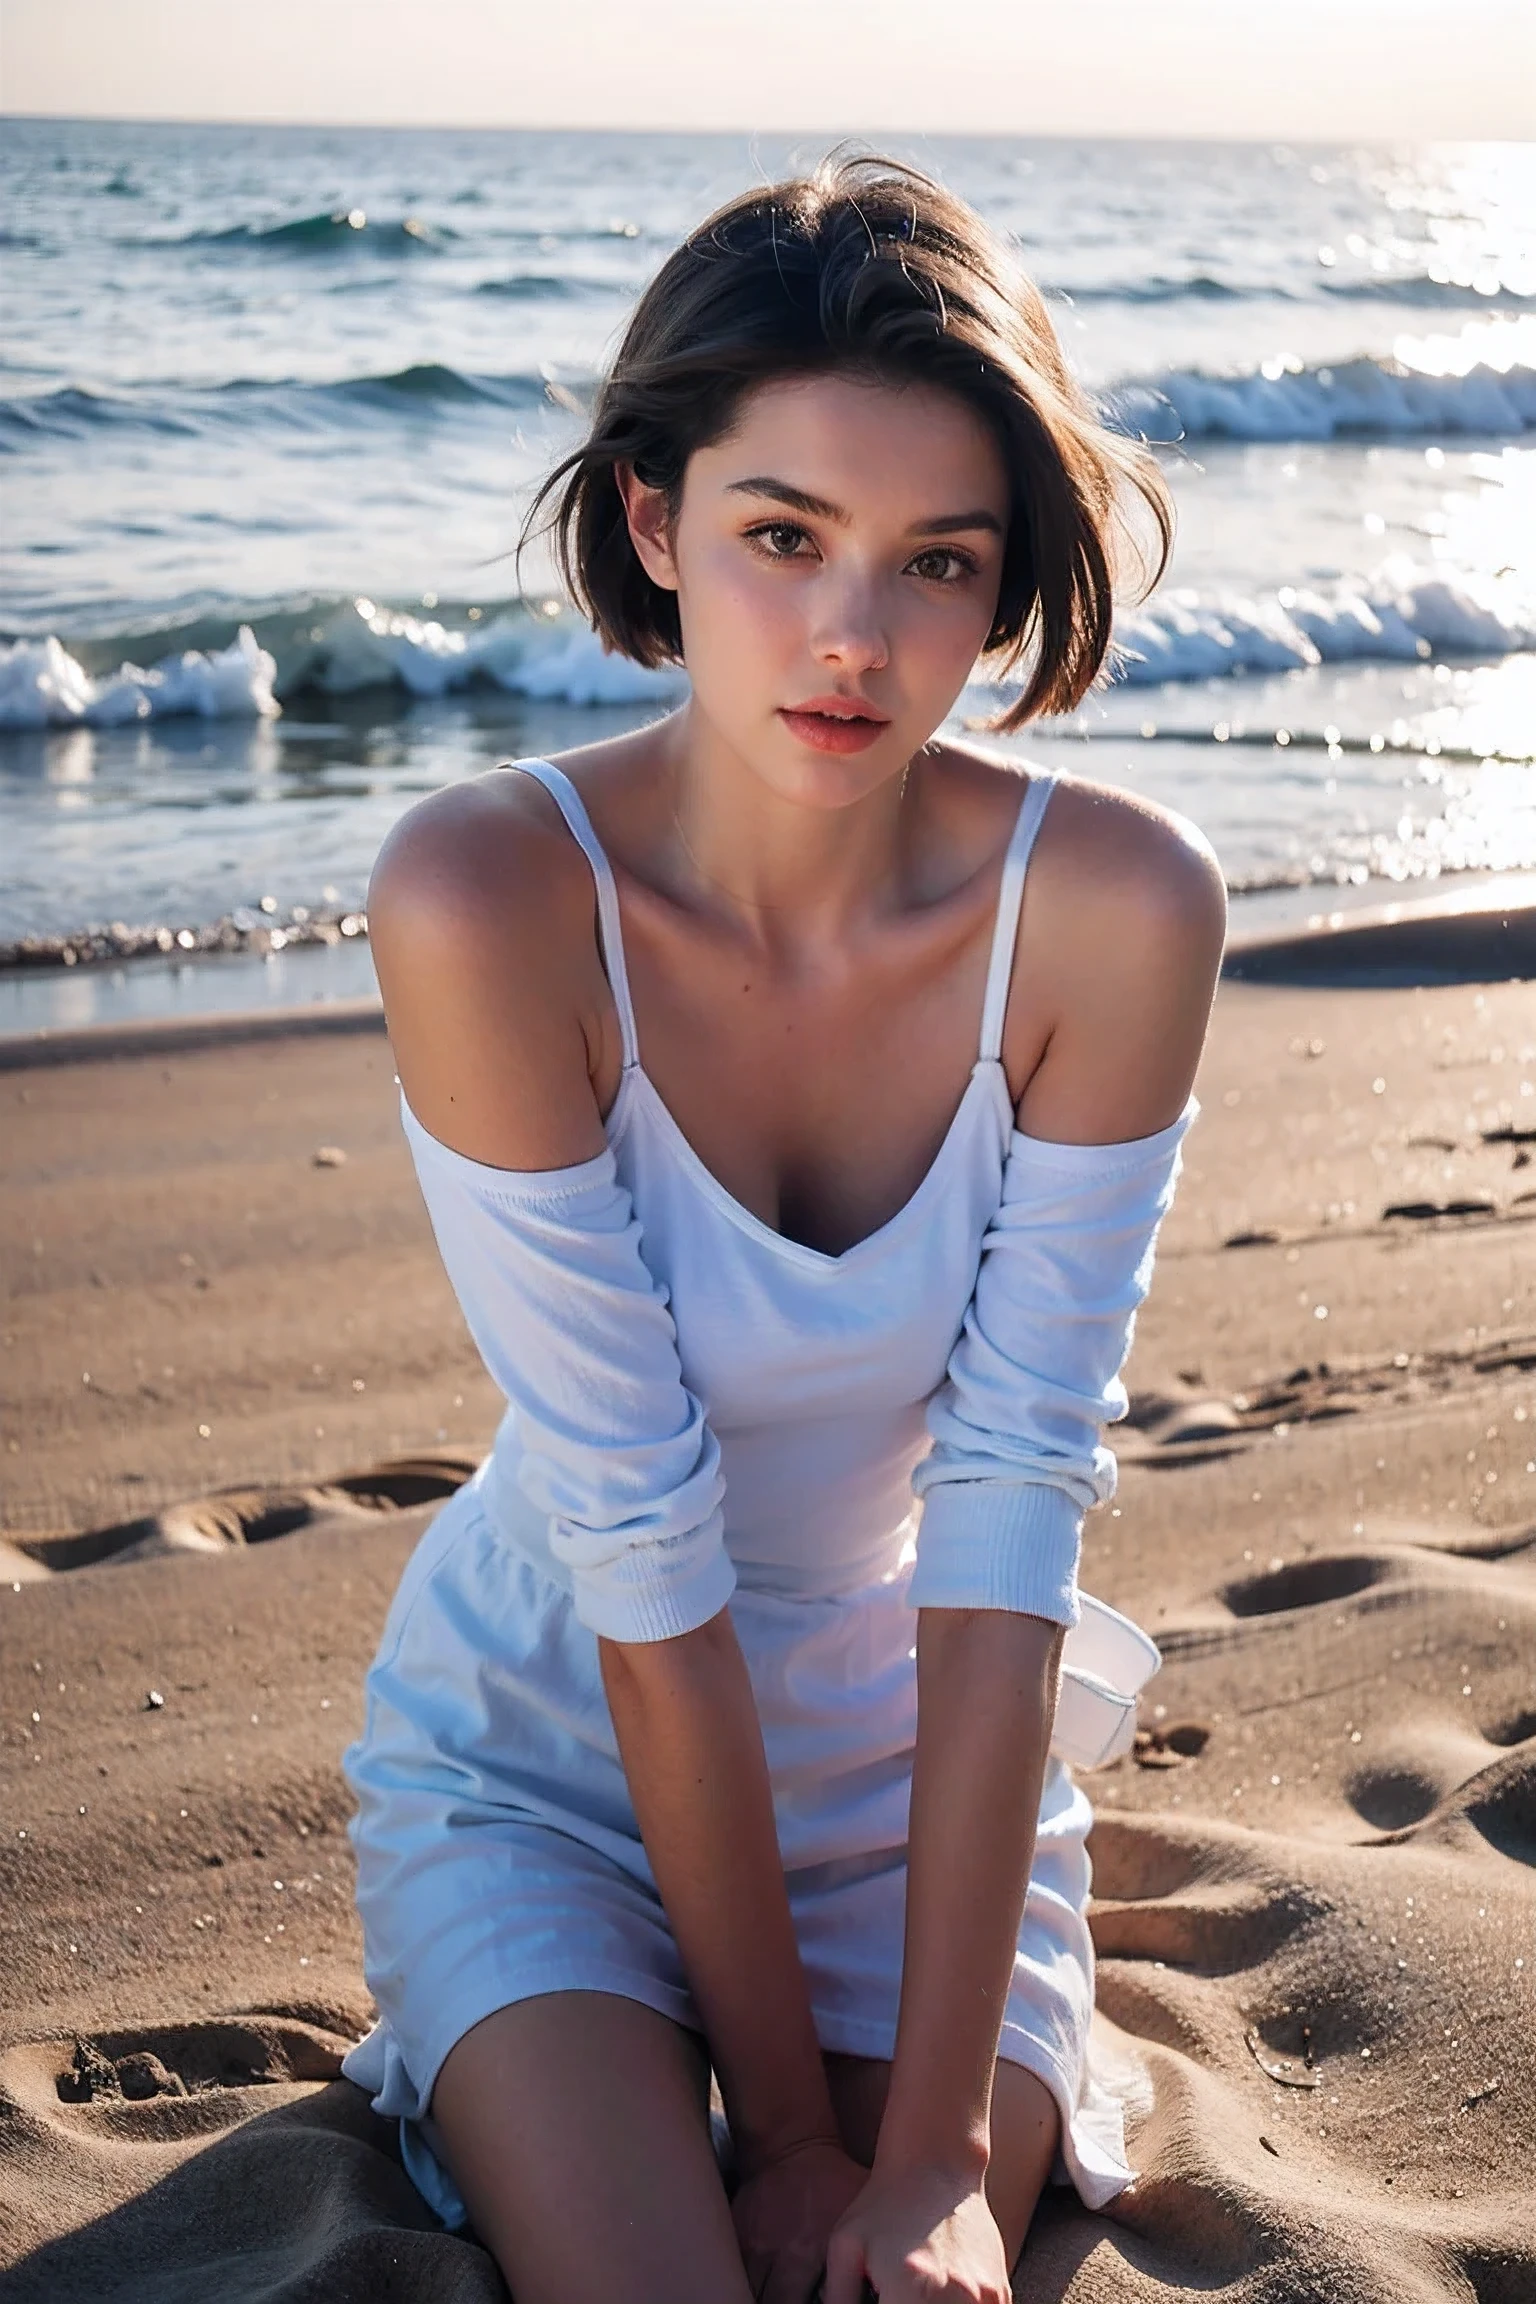 تصوير واقعي, أنثى شابة جميلة ,شعر قصير ,شاطئ